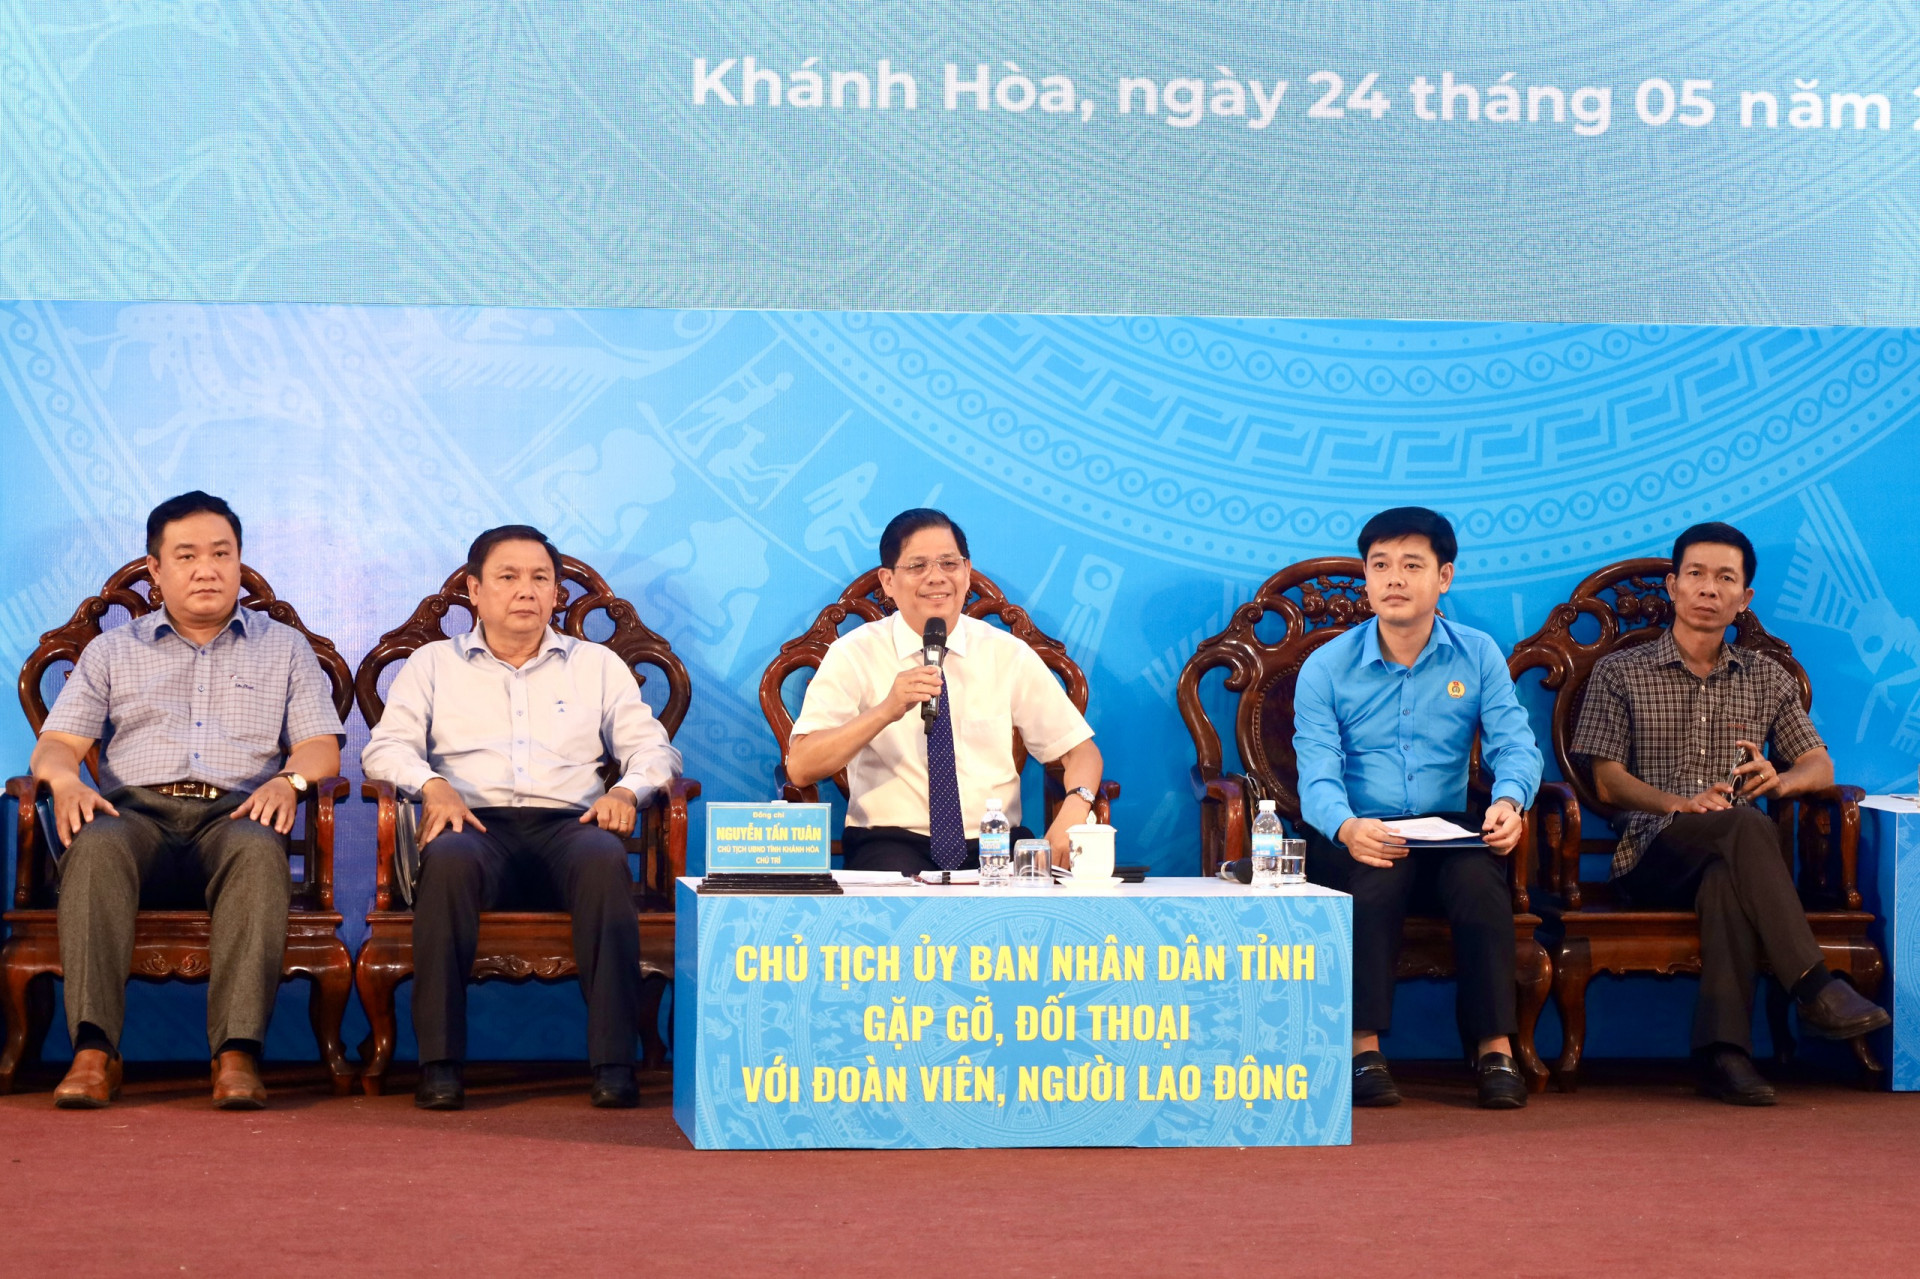 Đồng chí Nguyễn Tấn Tuân cùng lãnh đạo các sở, ngành tại hội nghị đối thoại với đoàn viên, người lao động năm 2023.